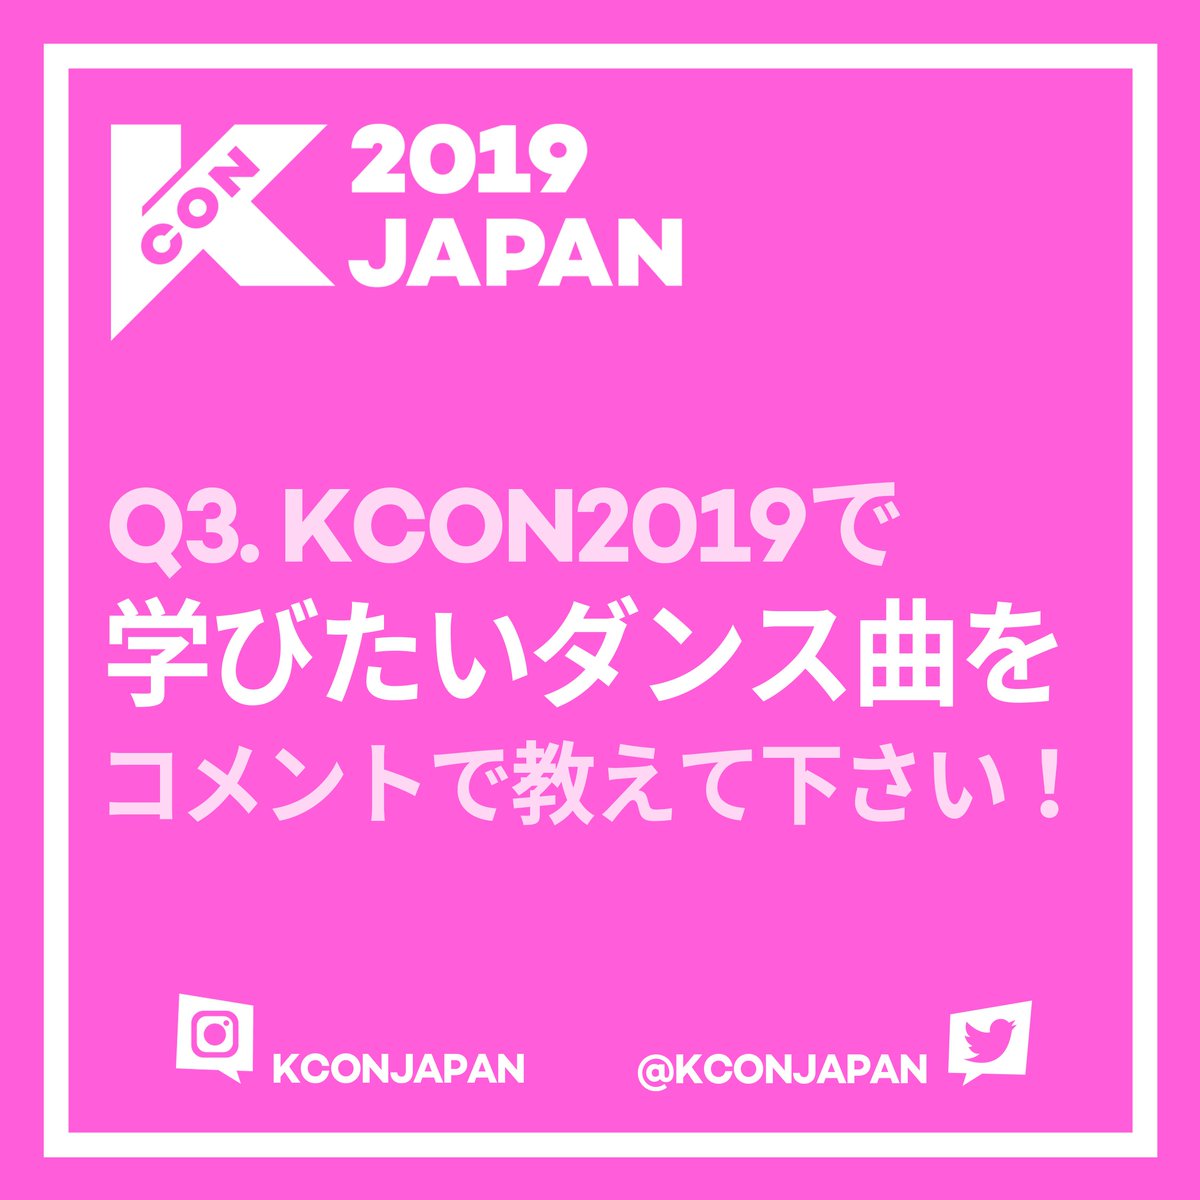 Uzivatel Kcon Japan Na Twitteru Kcon19japan Kcon リサーチ K Popダンス Kconで学びたいダンス曲を Kconjapan と共にコメントで教えて下さい K Popアーティストのように可愛くてかっこいいダンスを一緒に踊りましょう 5月 17日 金 18日 土 19日 日